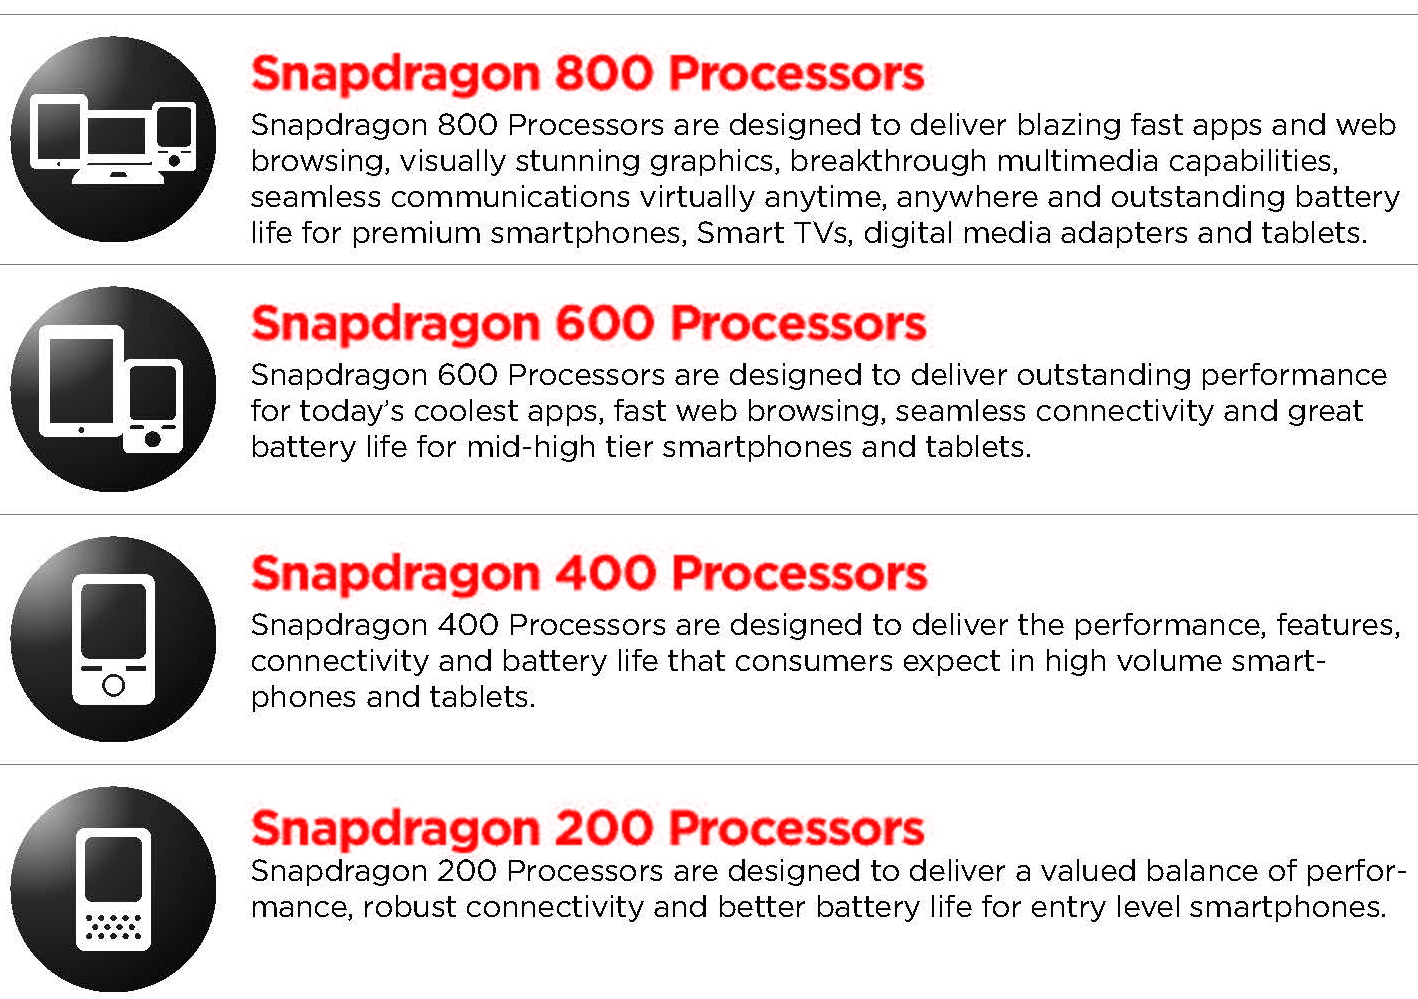 Qualcomm Snapdragon 800 Vs 600 Vs 400 Vs 200 series